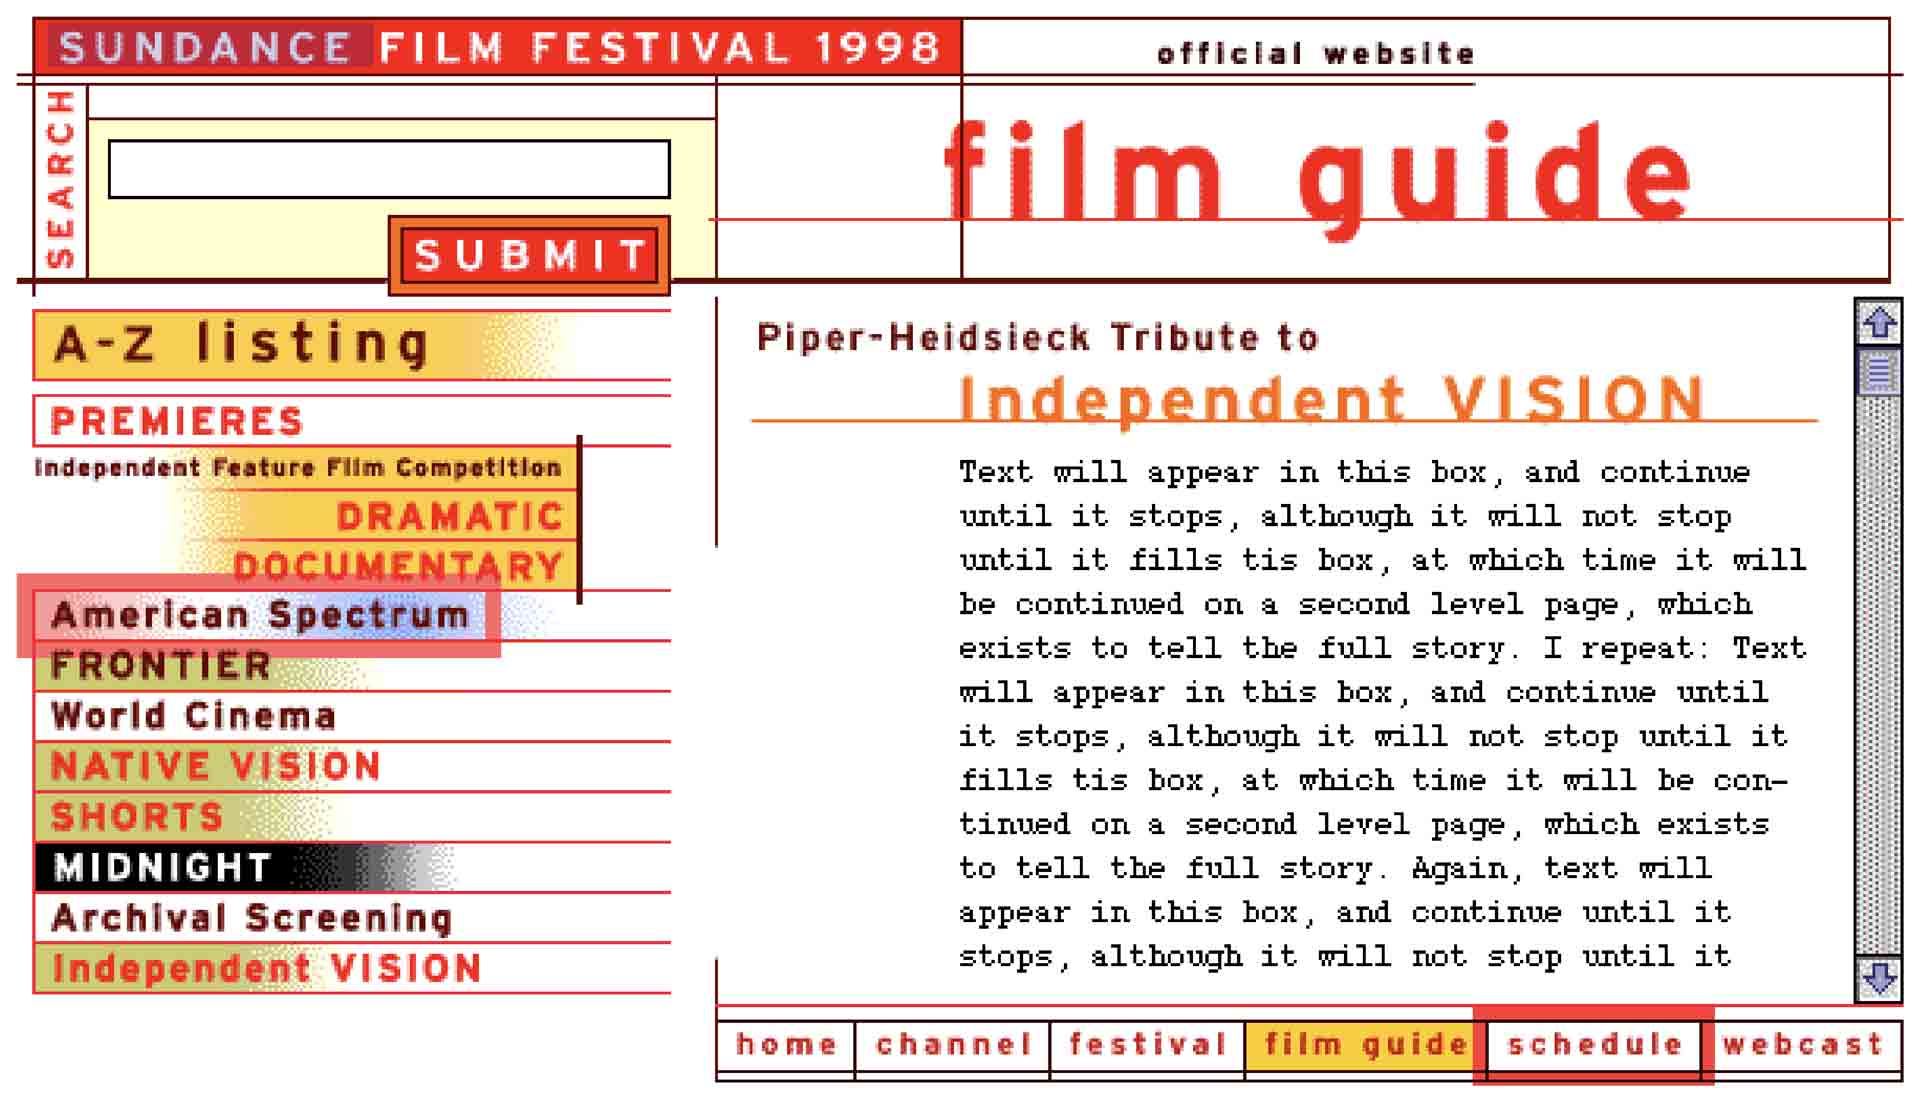 Sundance Film Festival Website film guide